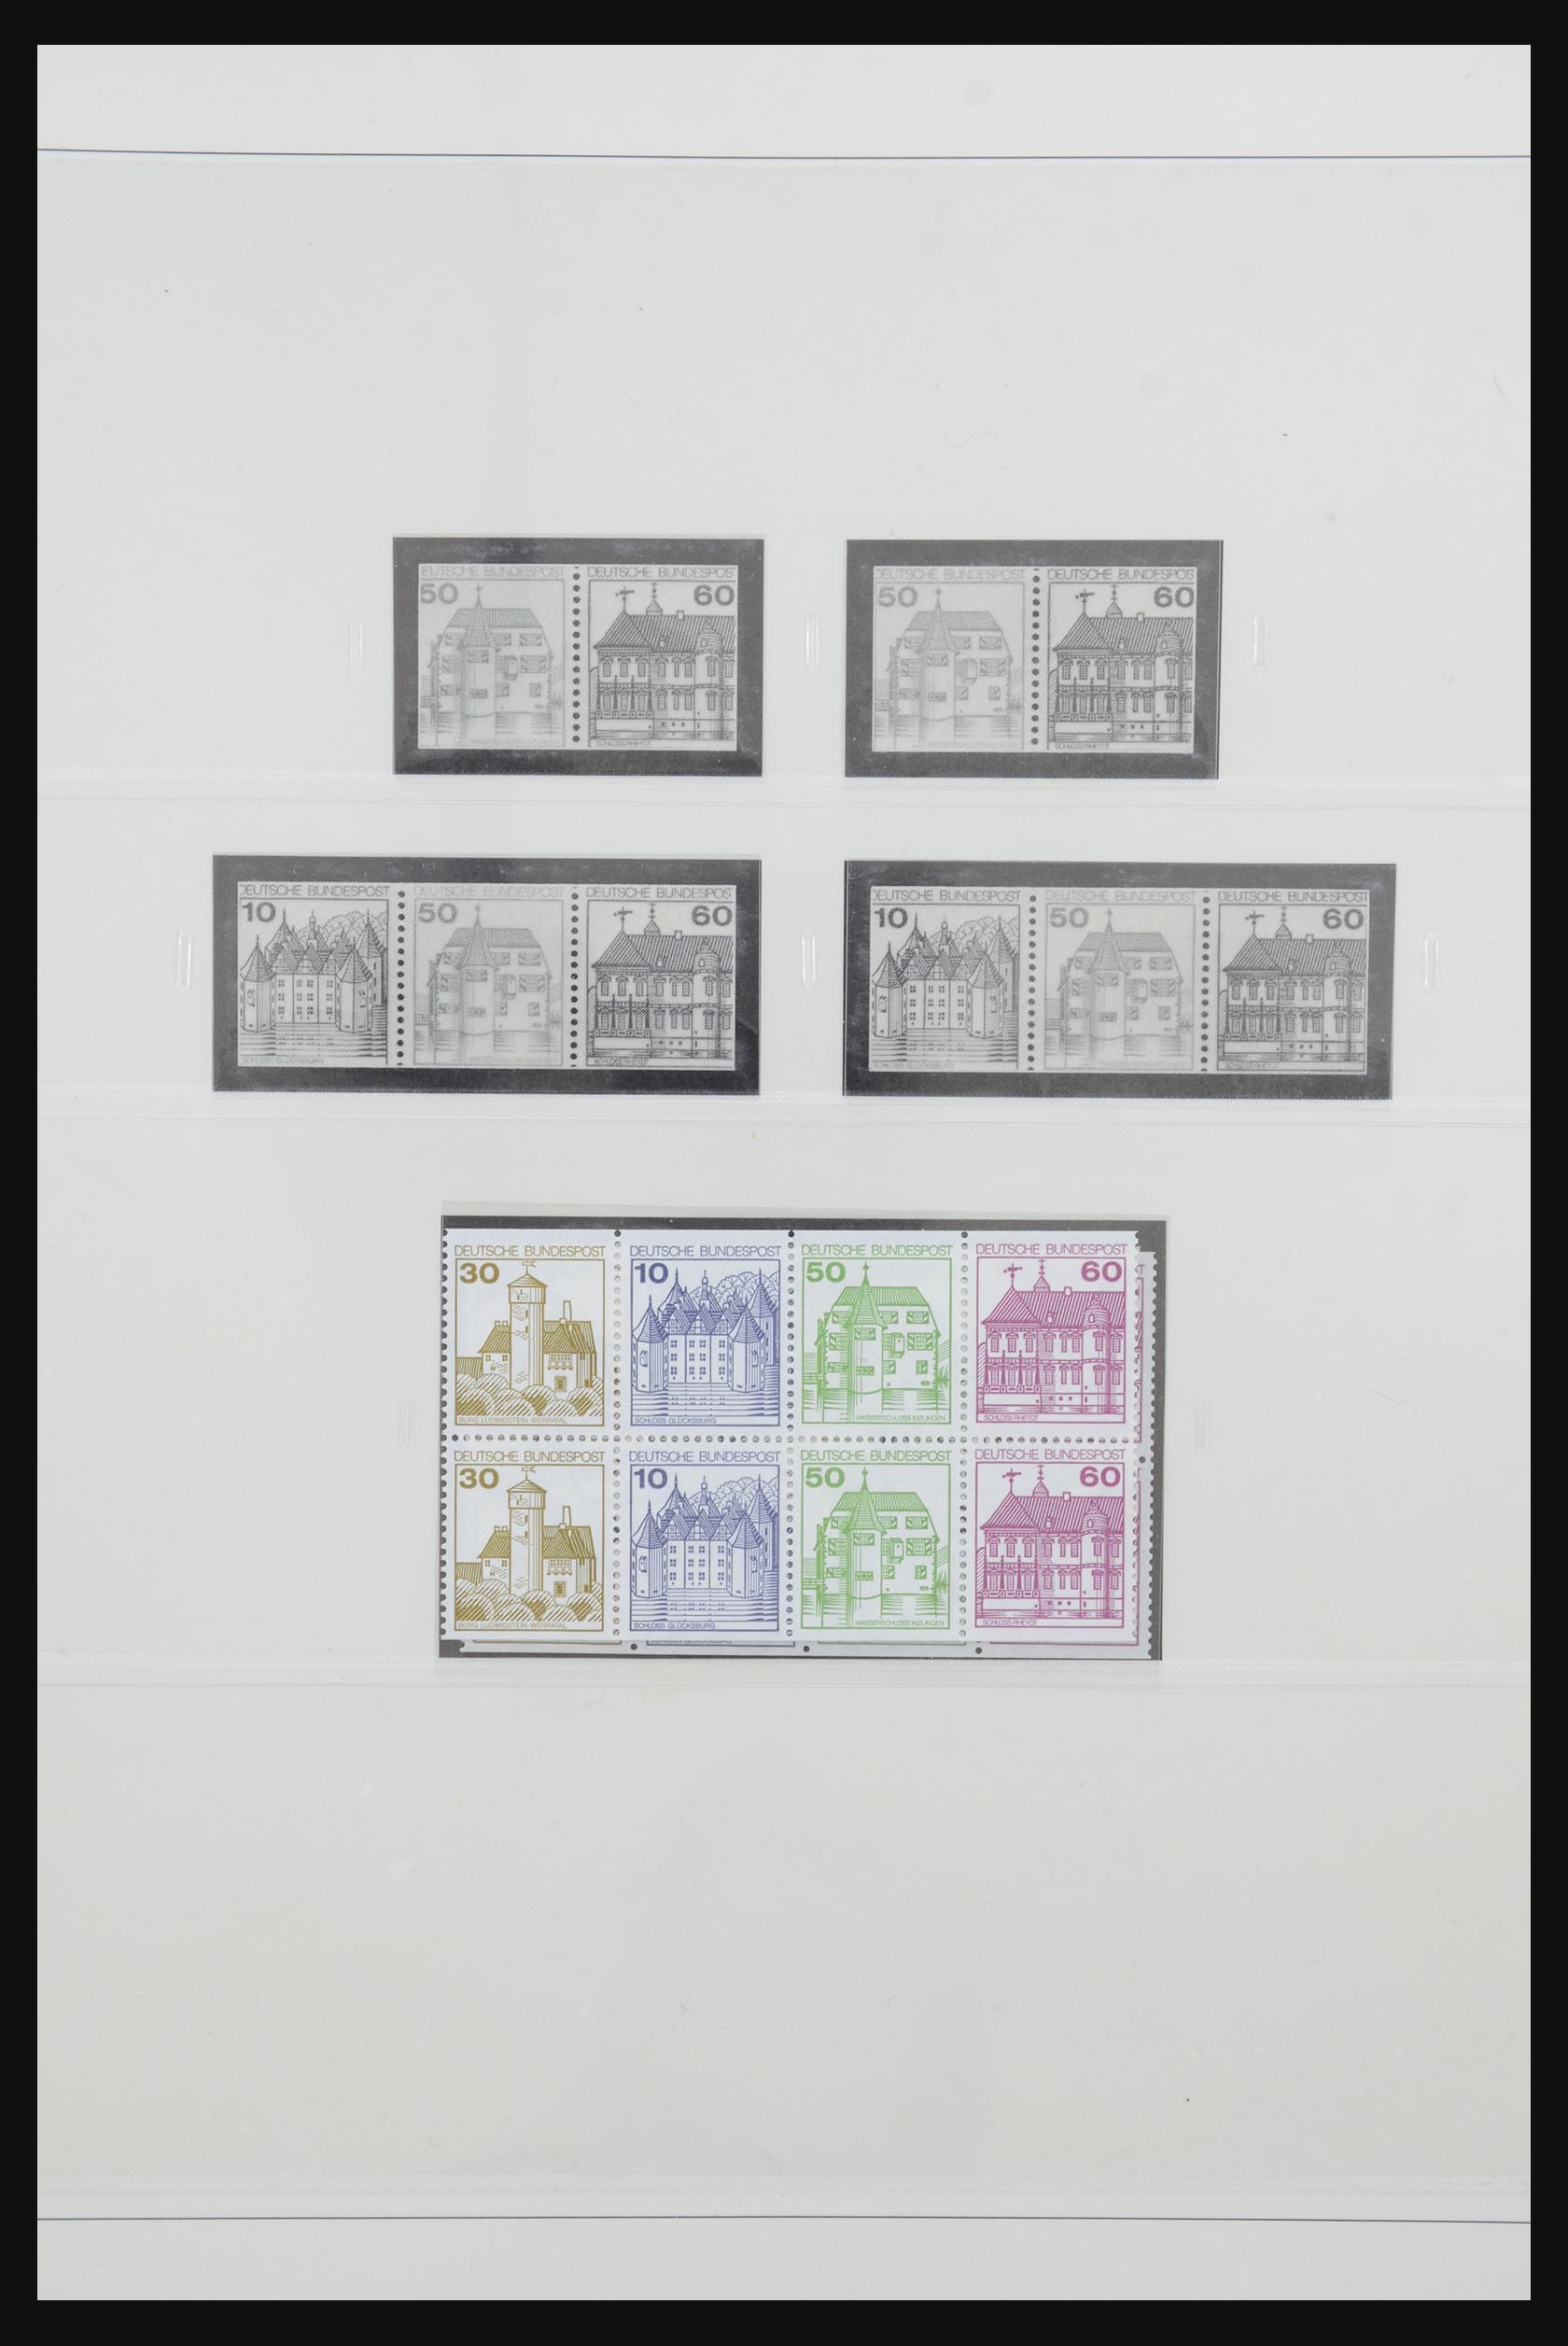 31842 063 - 31842 Bundespost combinaties 1951-2003.